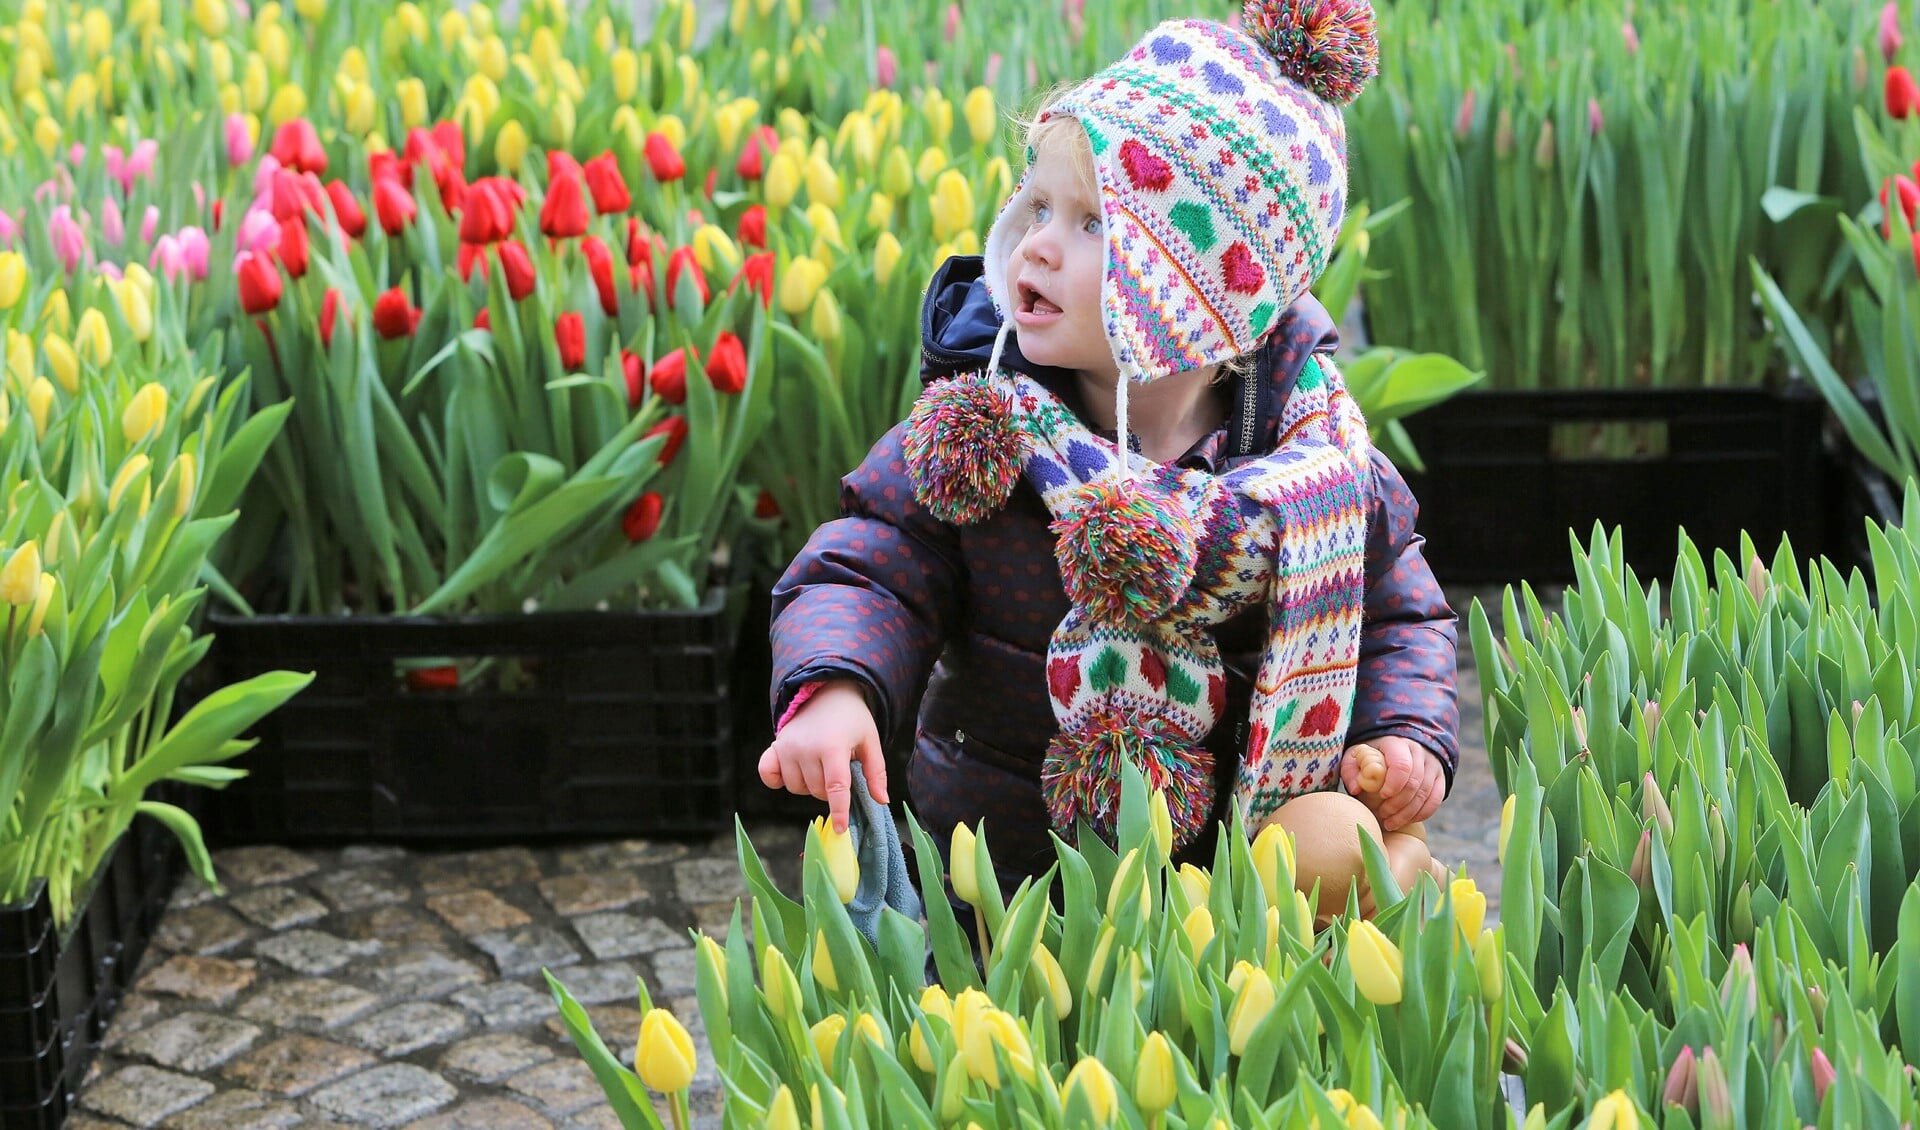 Alle bezoekers van het winkelcentrum mogen hun eigen bosje tulpen komen plukken (foto: VidiPhoto).